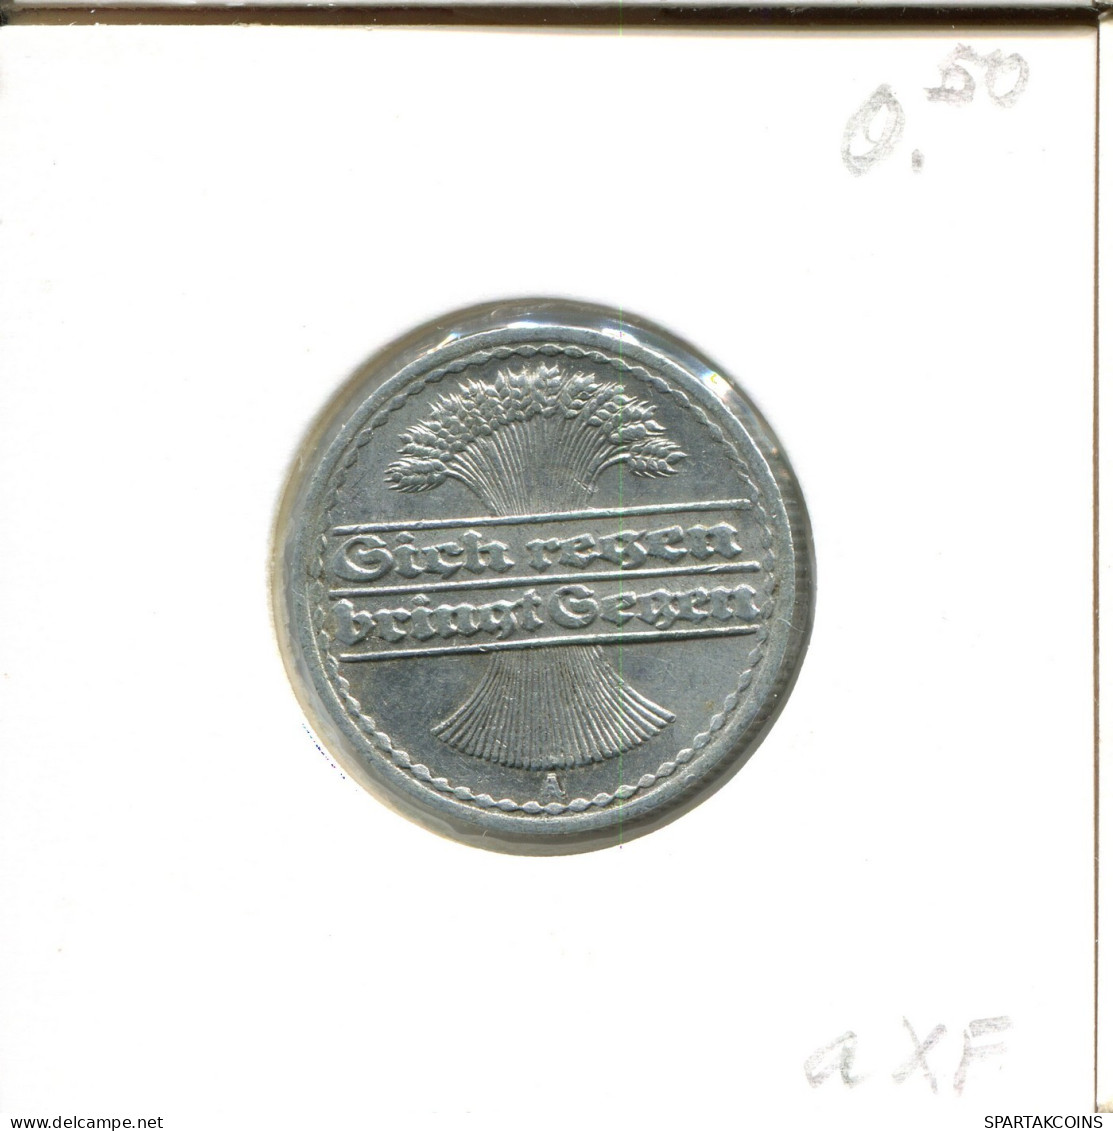 50 PFENNIG 1921 A DEUTSCHLAND Münze GERMANY #DA798.D.A - 50 Rentenpfennig & 50 Reichspfennig